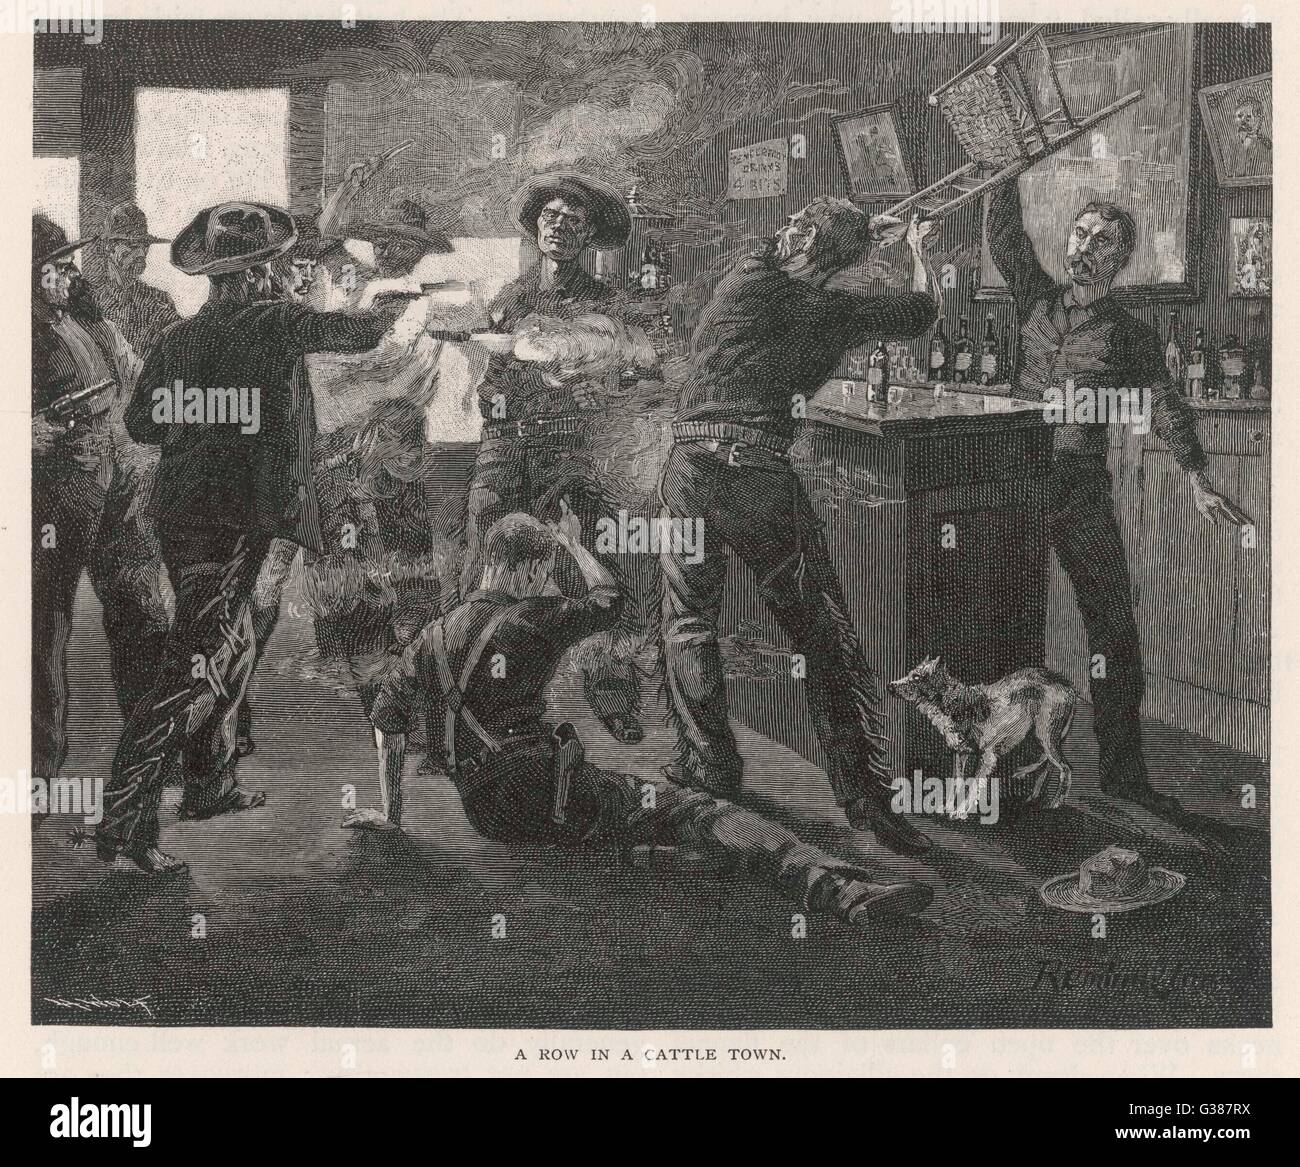 Una rissa nella città di bestiame - cowboy entrare in una lotta in una berlina. A parte le pistole di essere licenziato, sedie sono gettati e incrinato sopra le teste delle persone. Data: 1887 Foto Stock